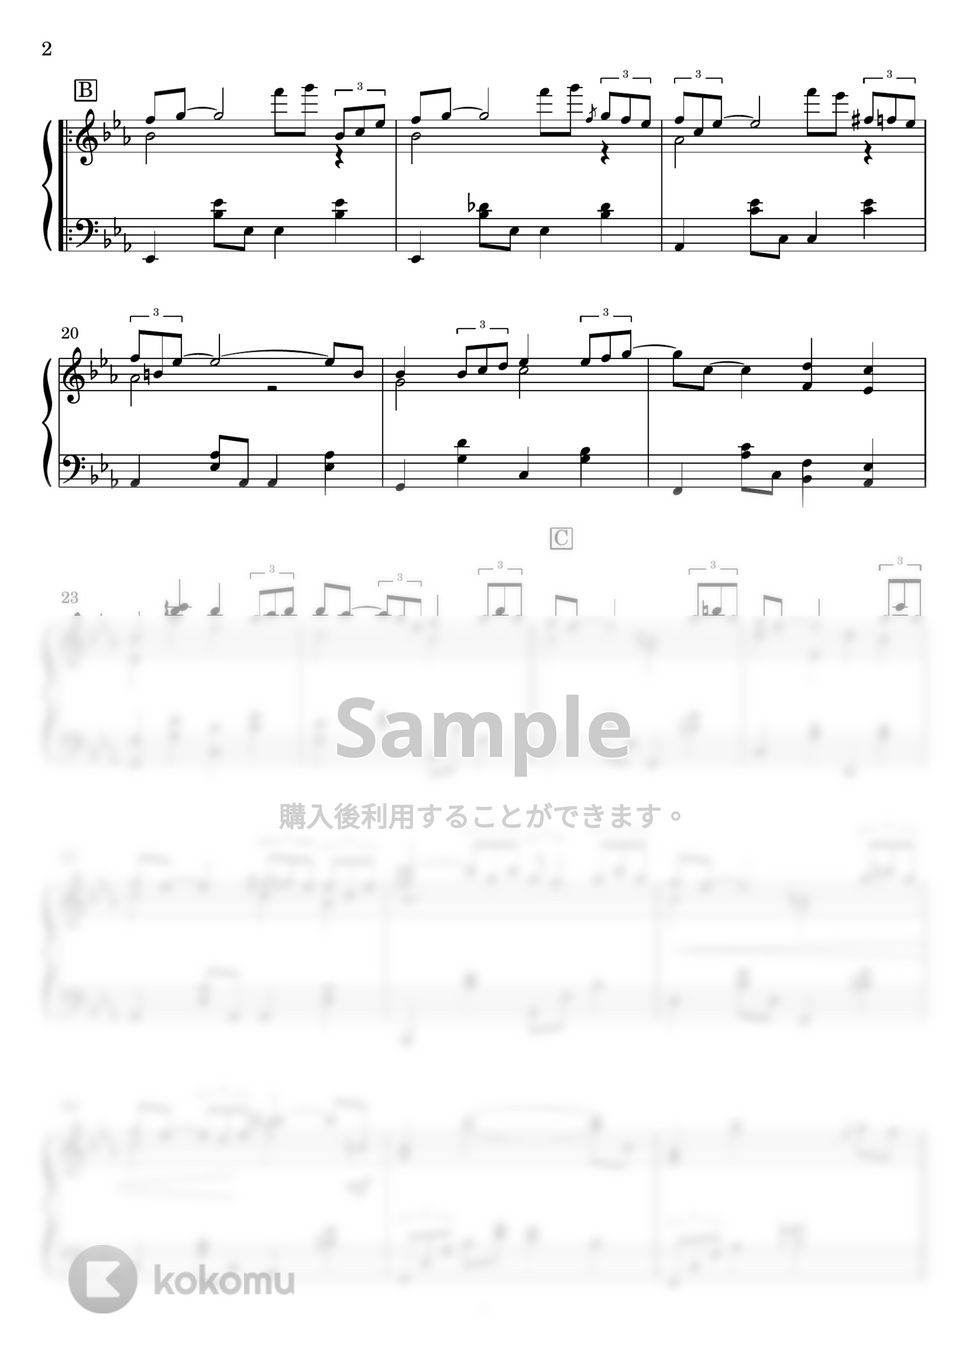 松田聖子 - SWEET MEMORIES (ピアノソロ) by Miz